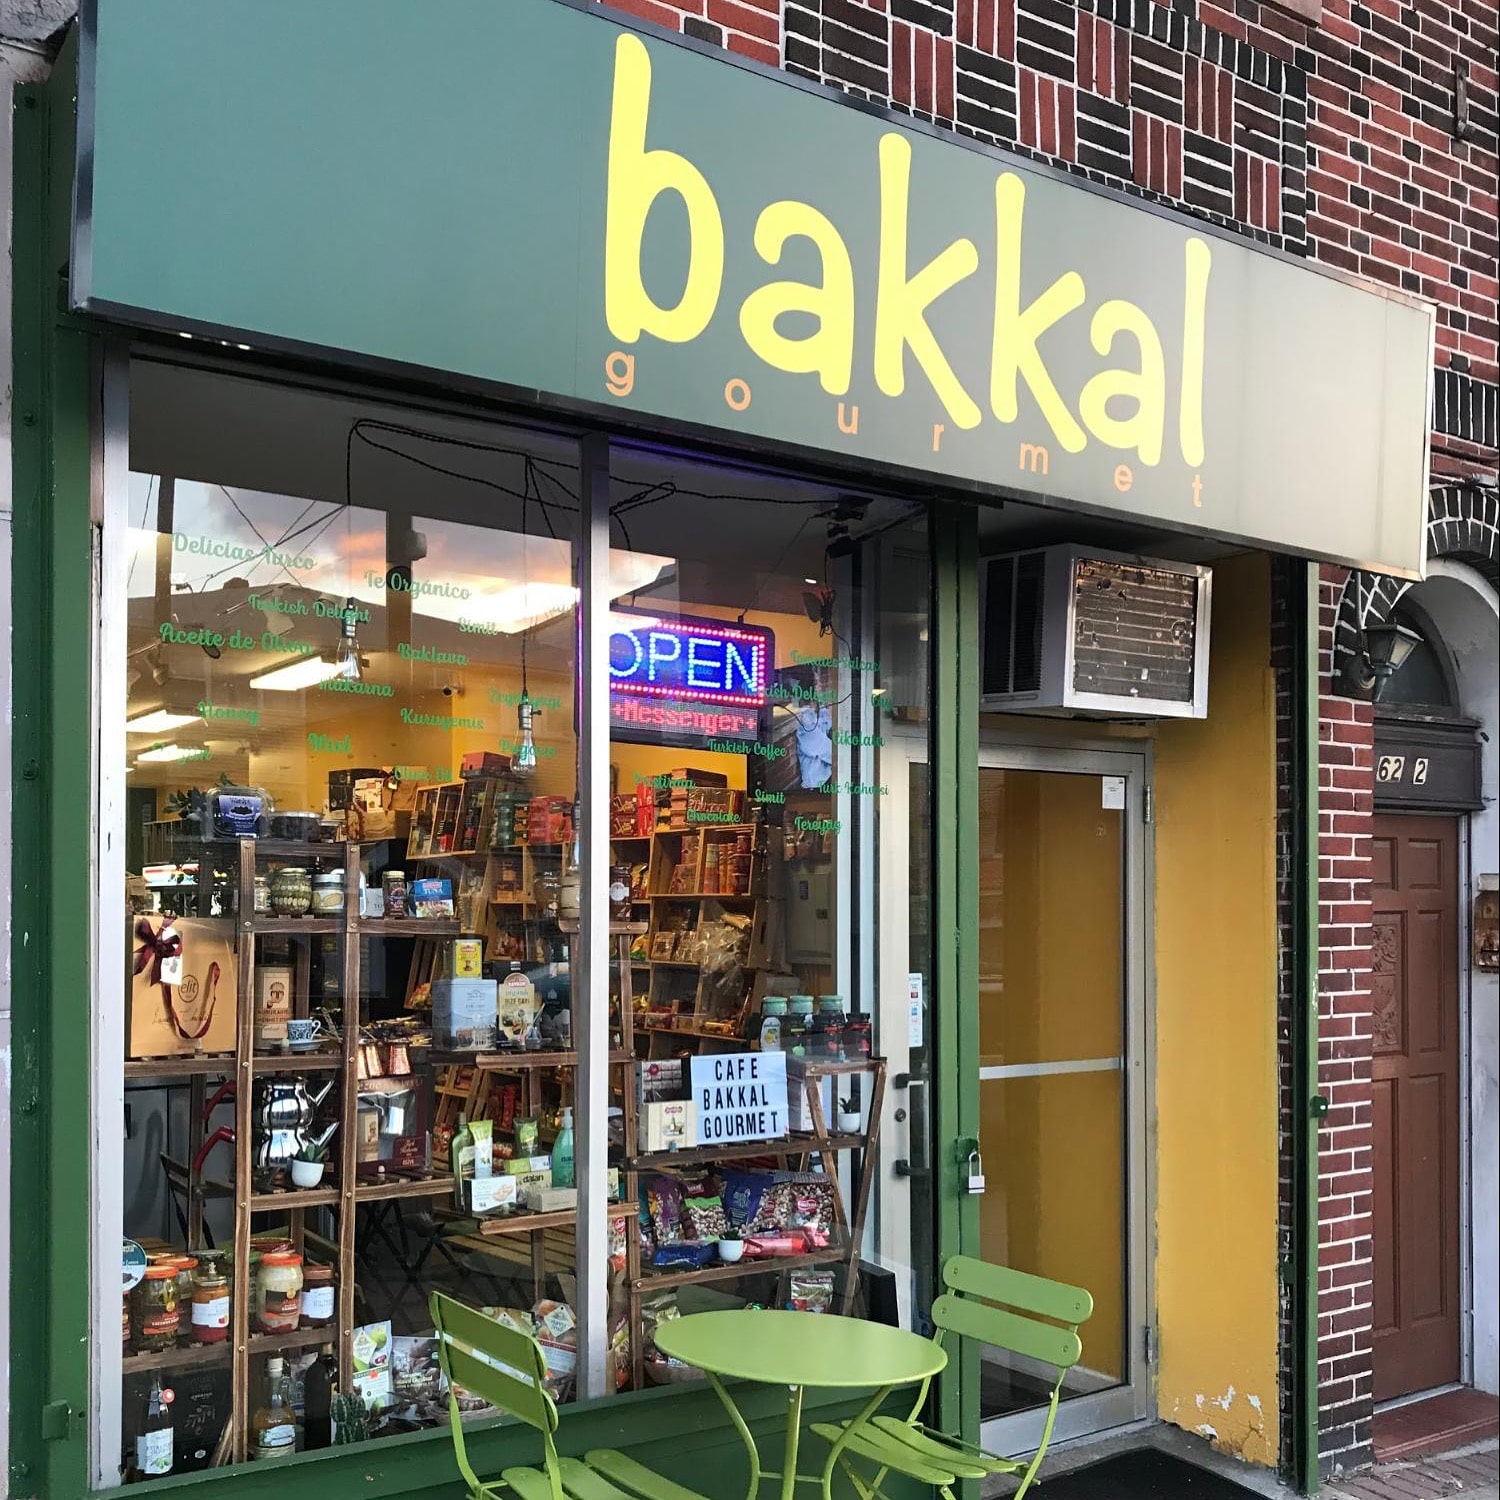 bakkal west new york